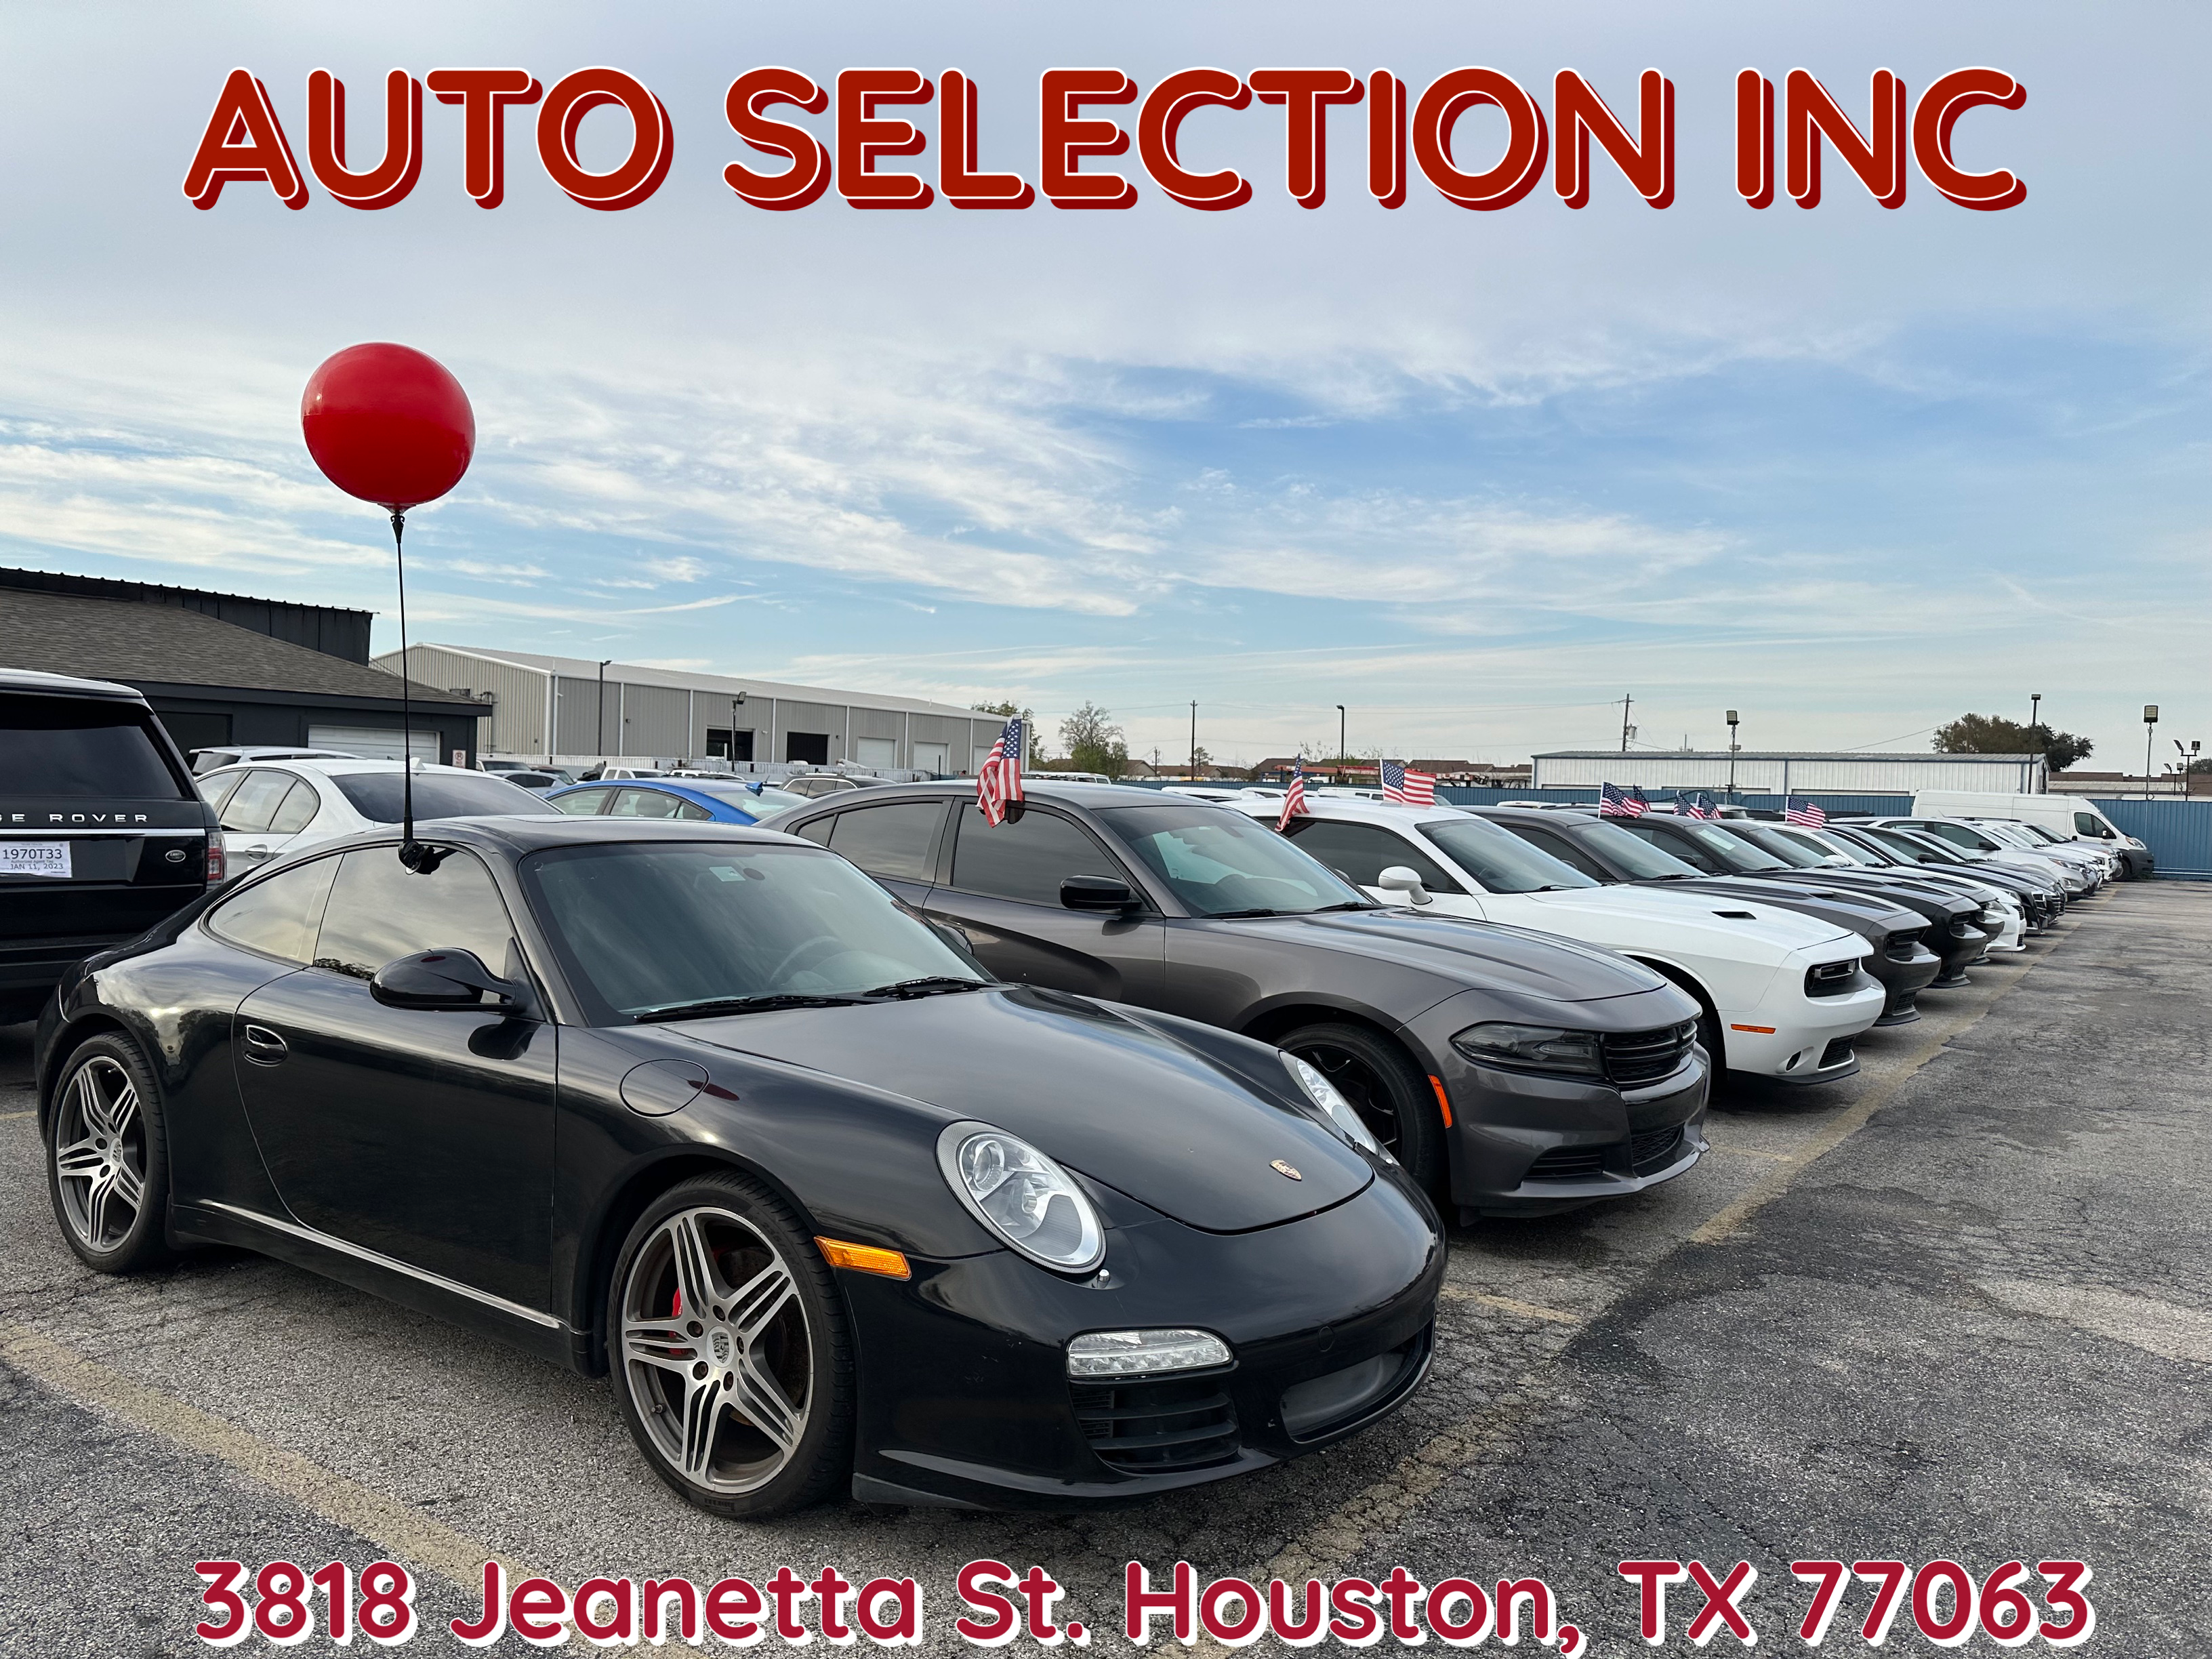 Auto Selection Inc.